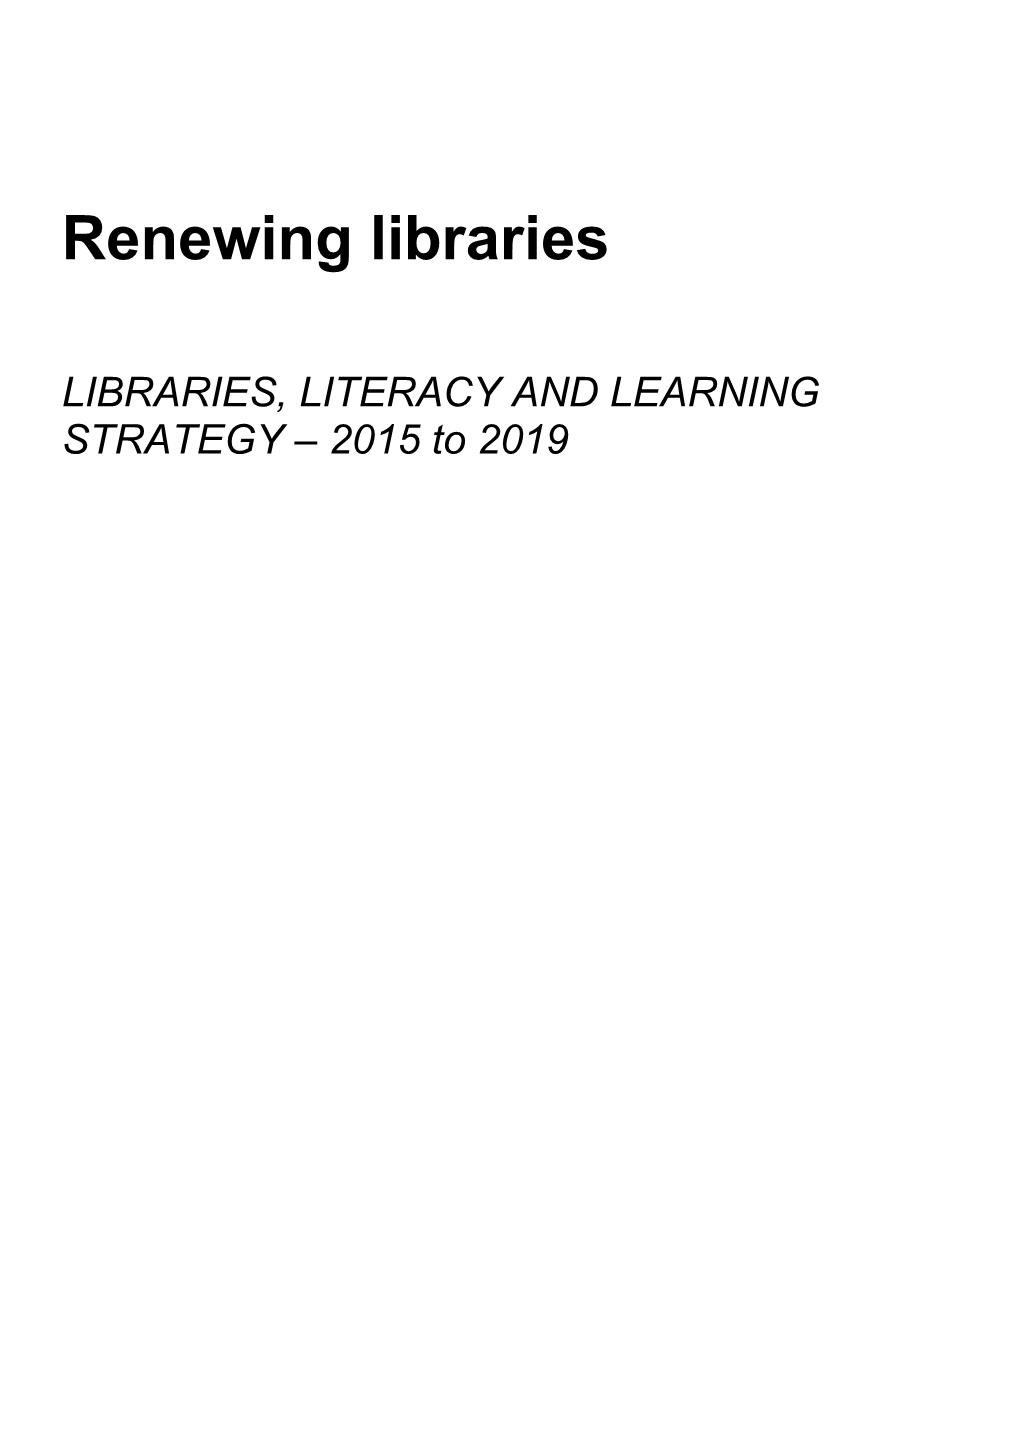 Renewing Libraries